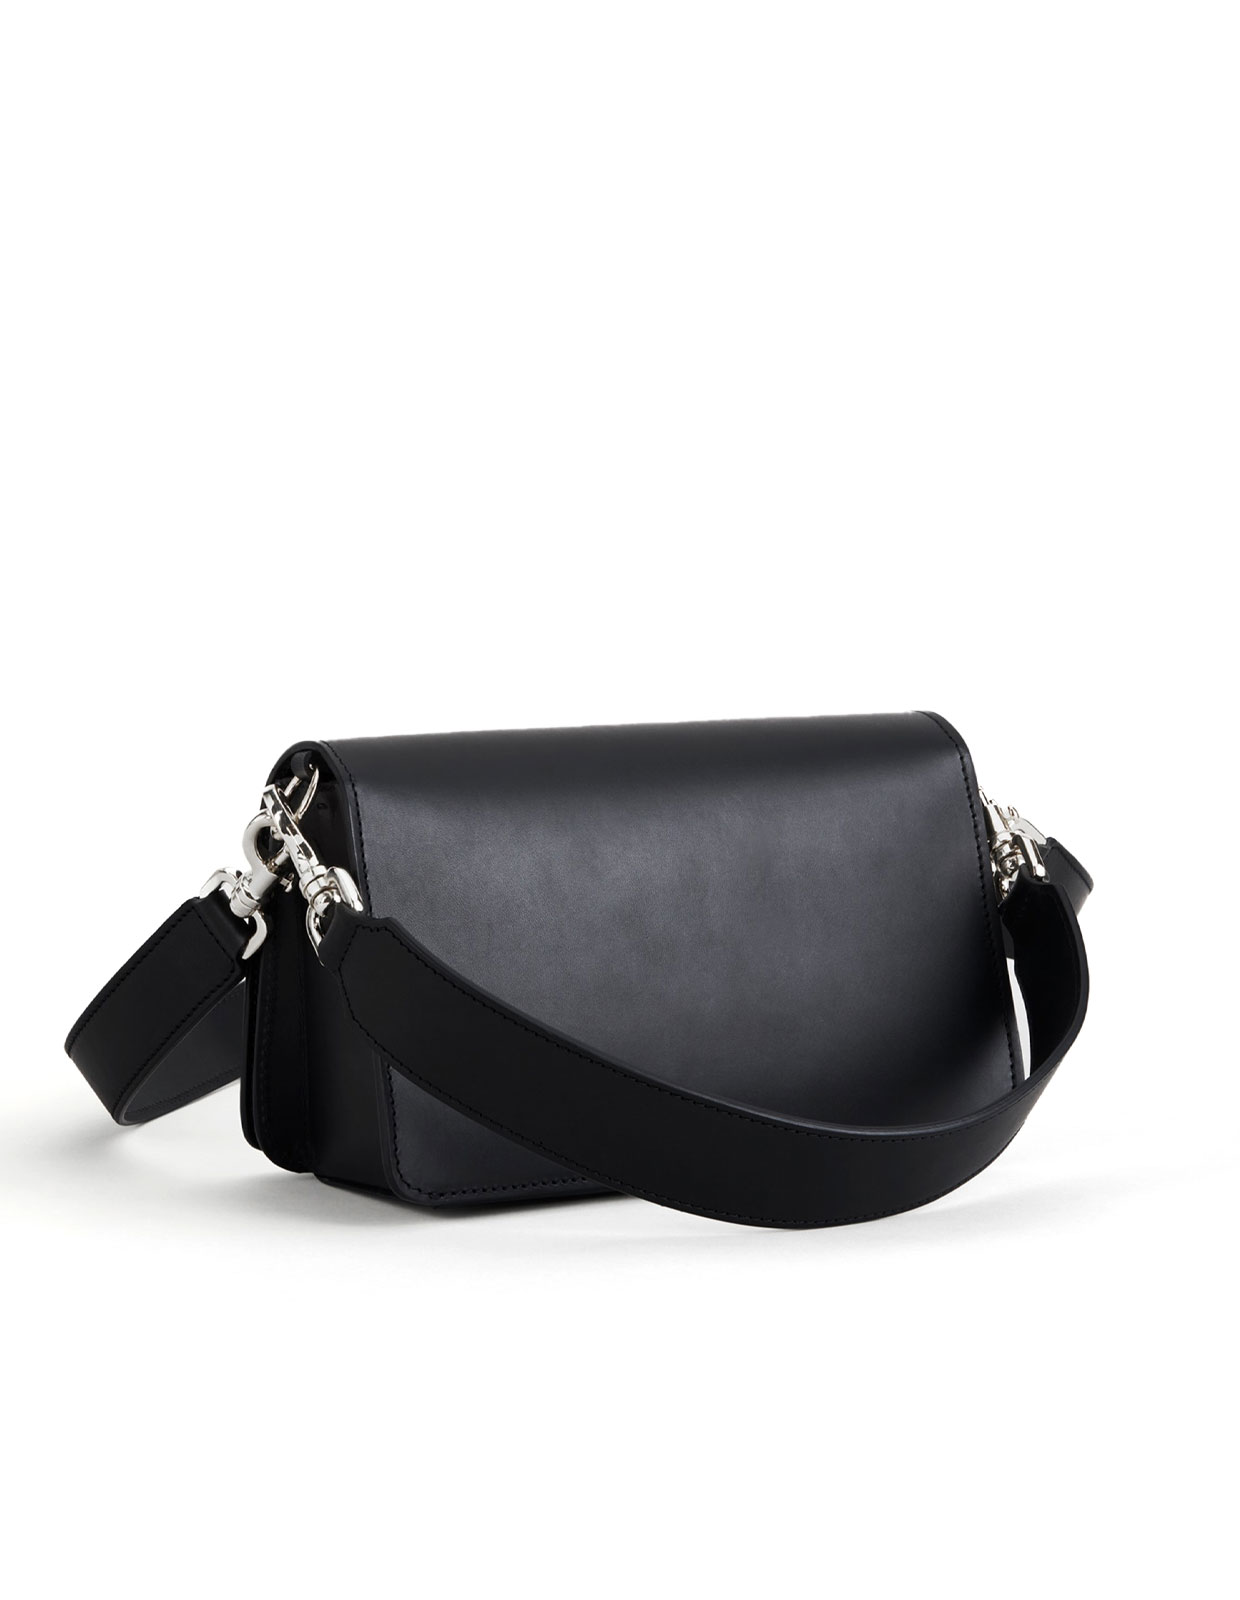 Assisi Baguette Bag Black/Silver